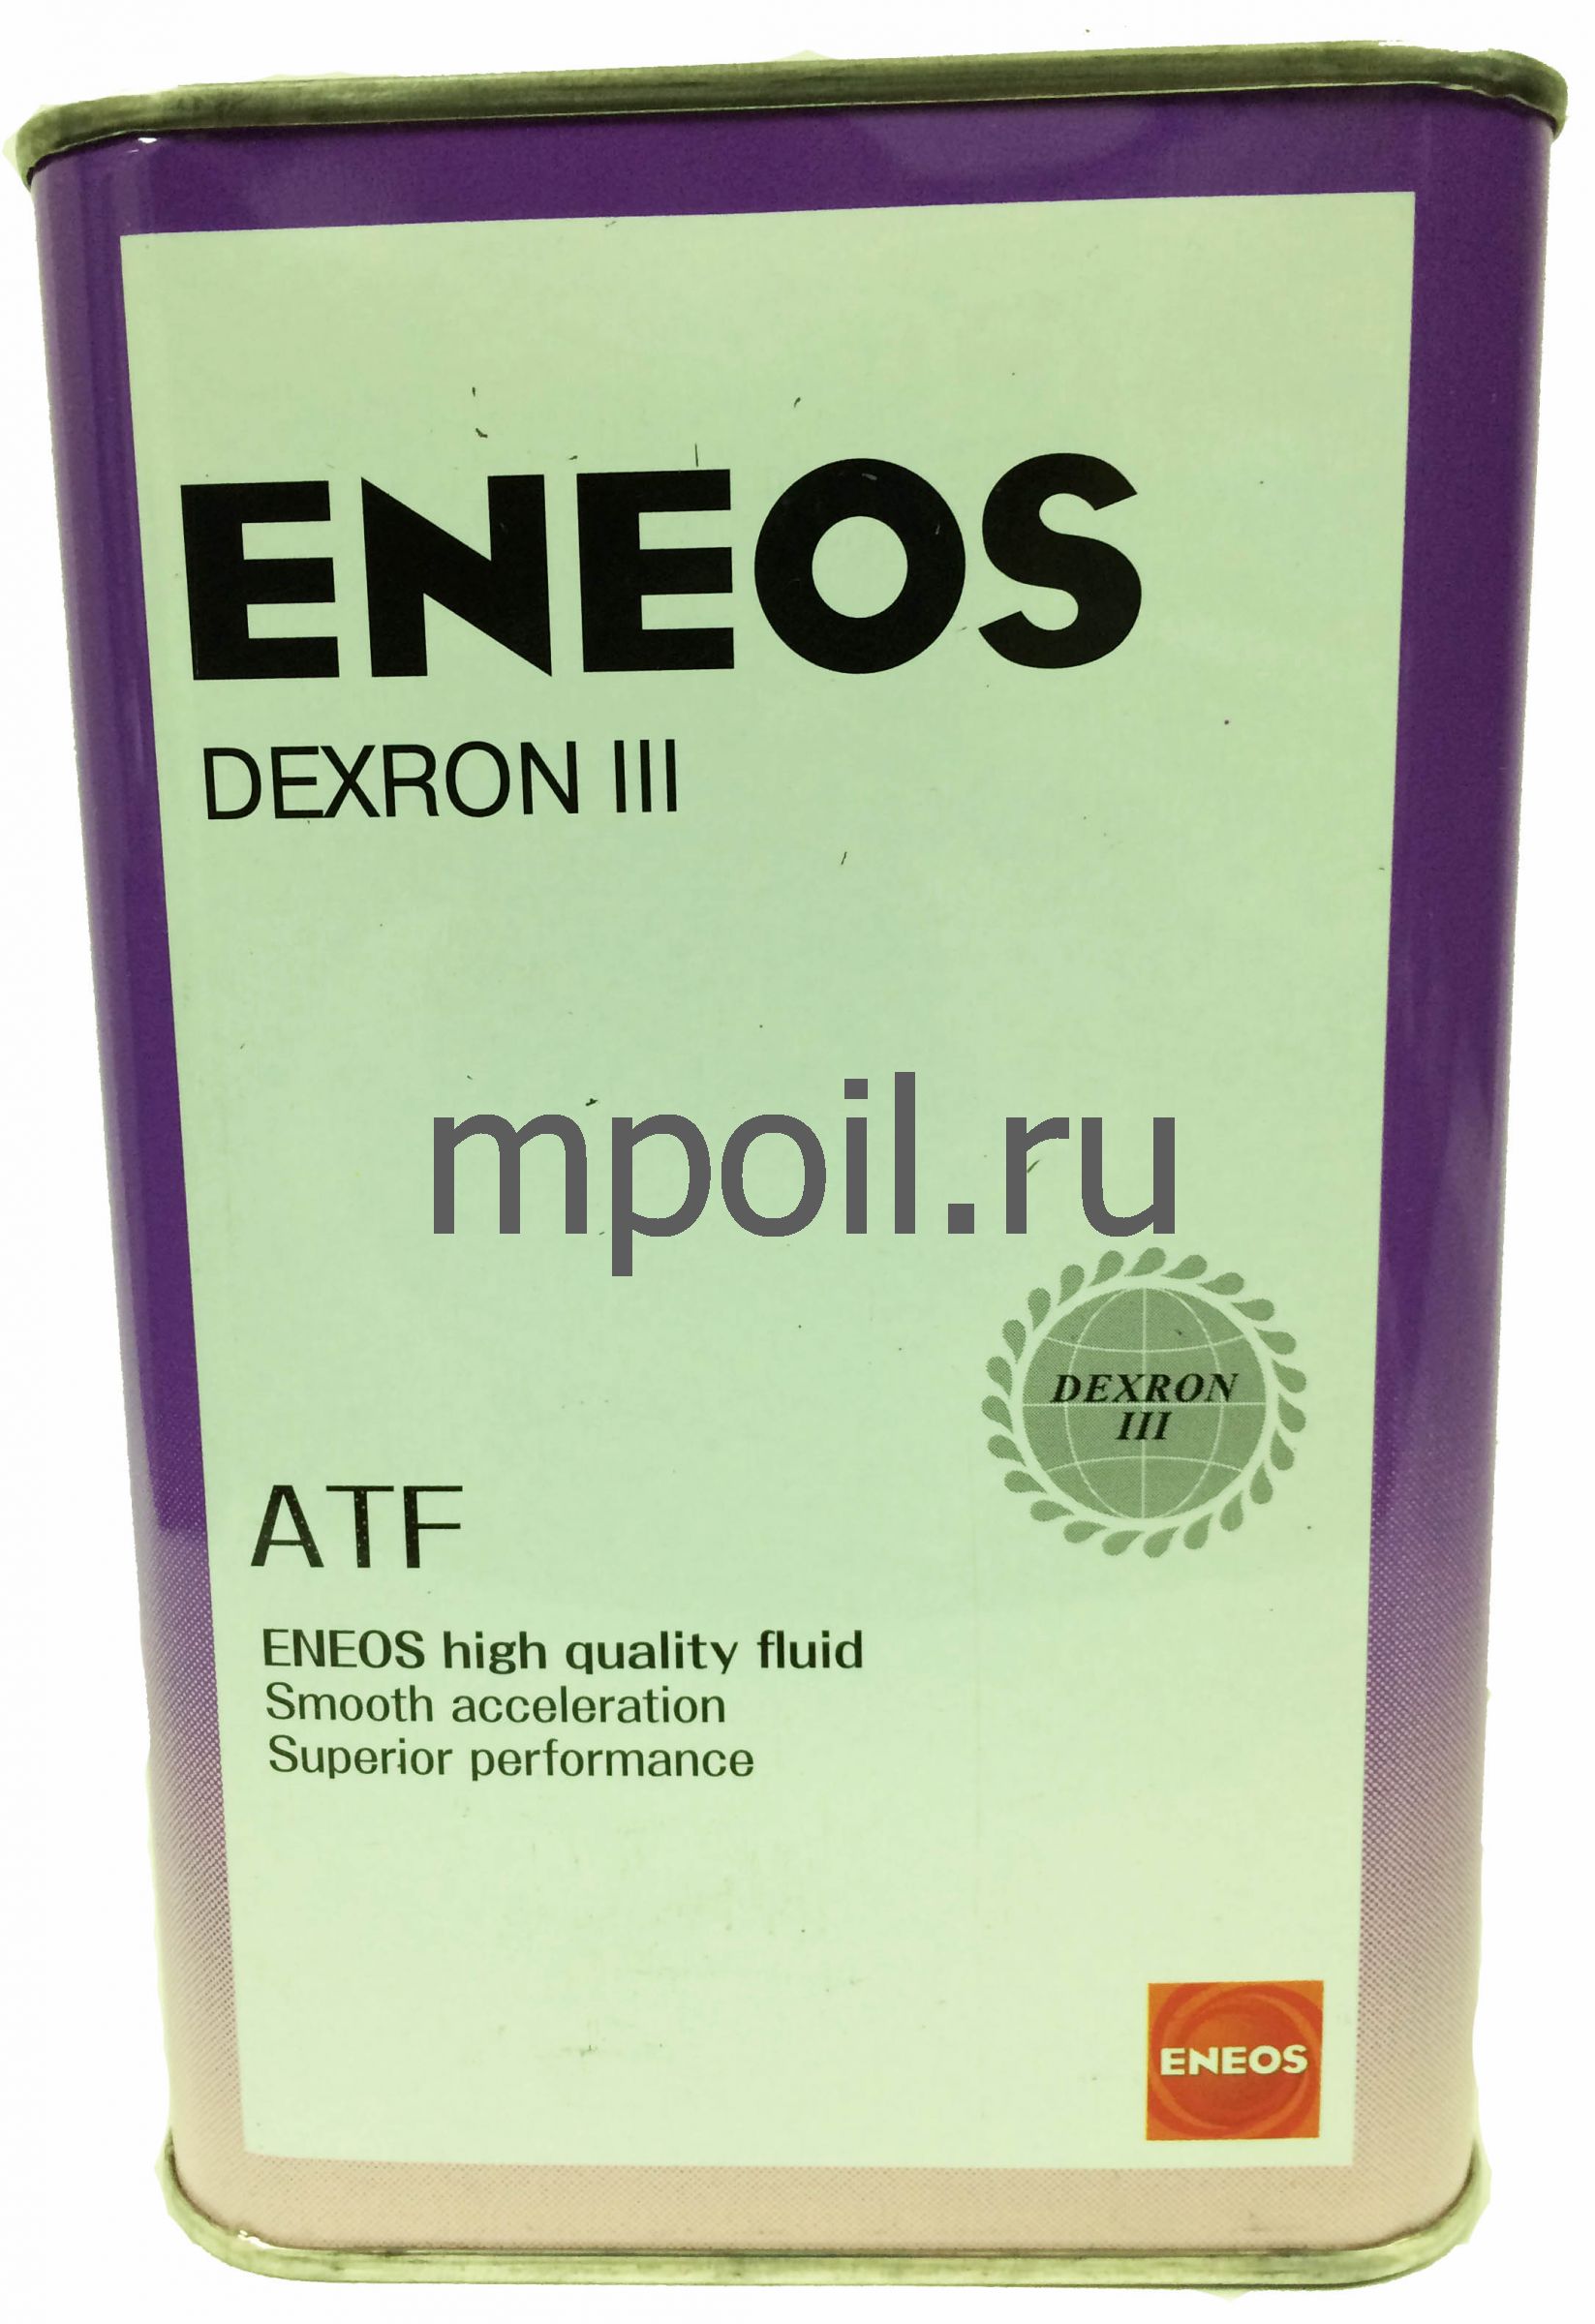 Eneos atf dexron. ENEOS oil1305. Декстрон 3 ENEOS. ENEOS ATF 3. ATF Dexron 3 енеос.